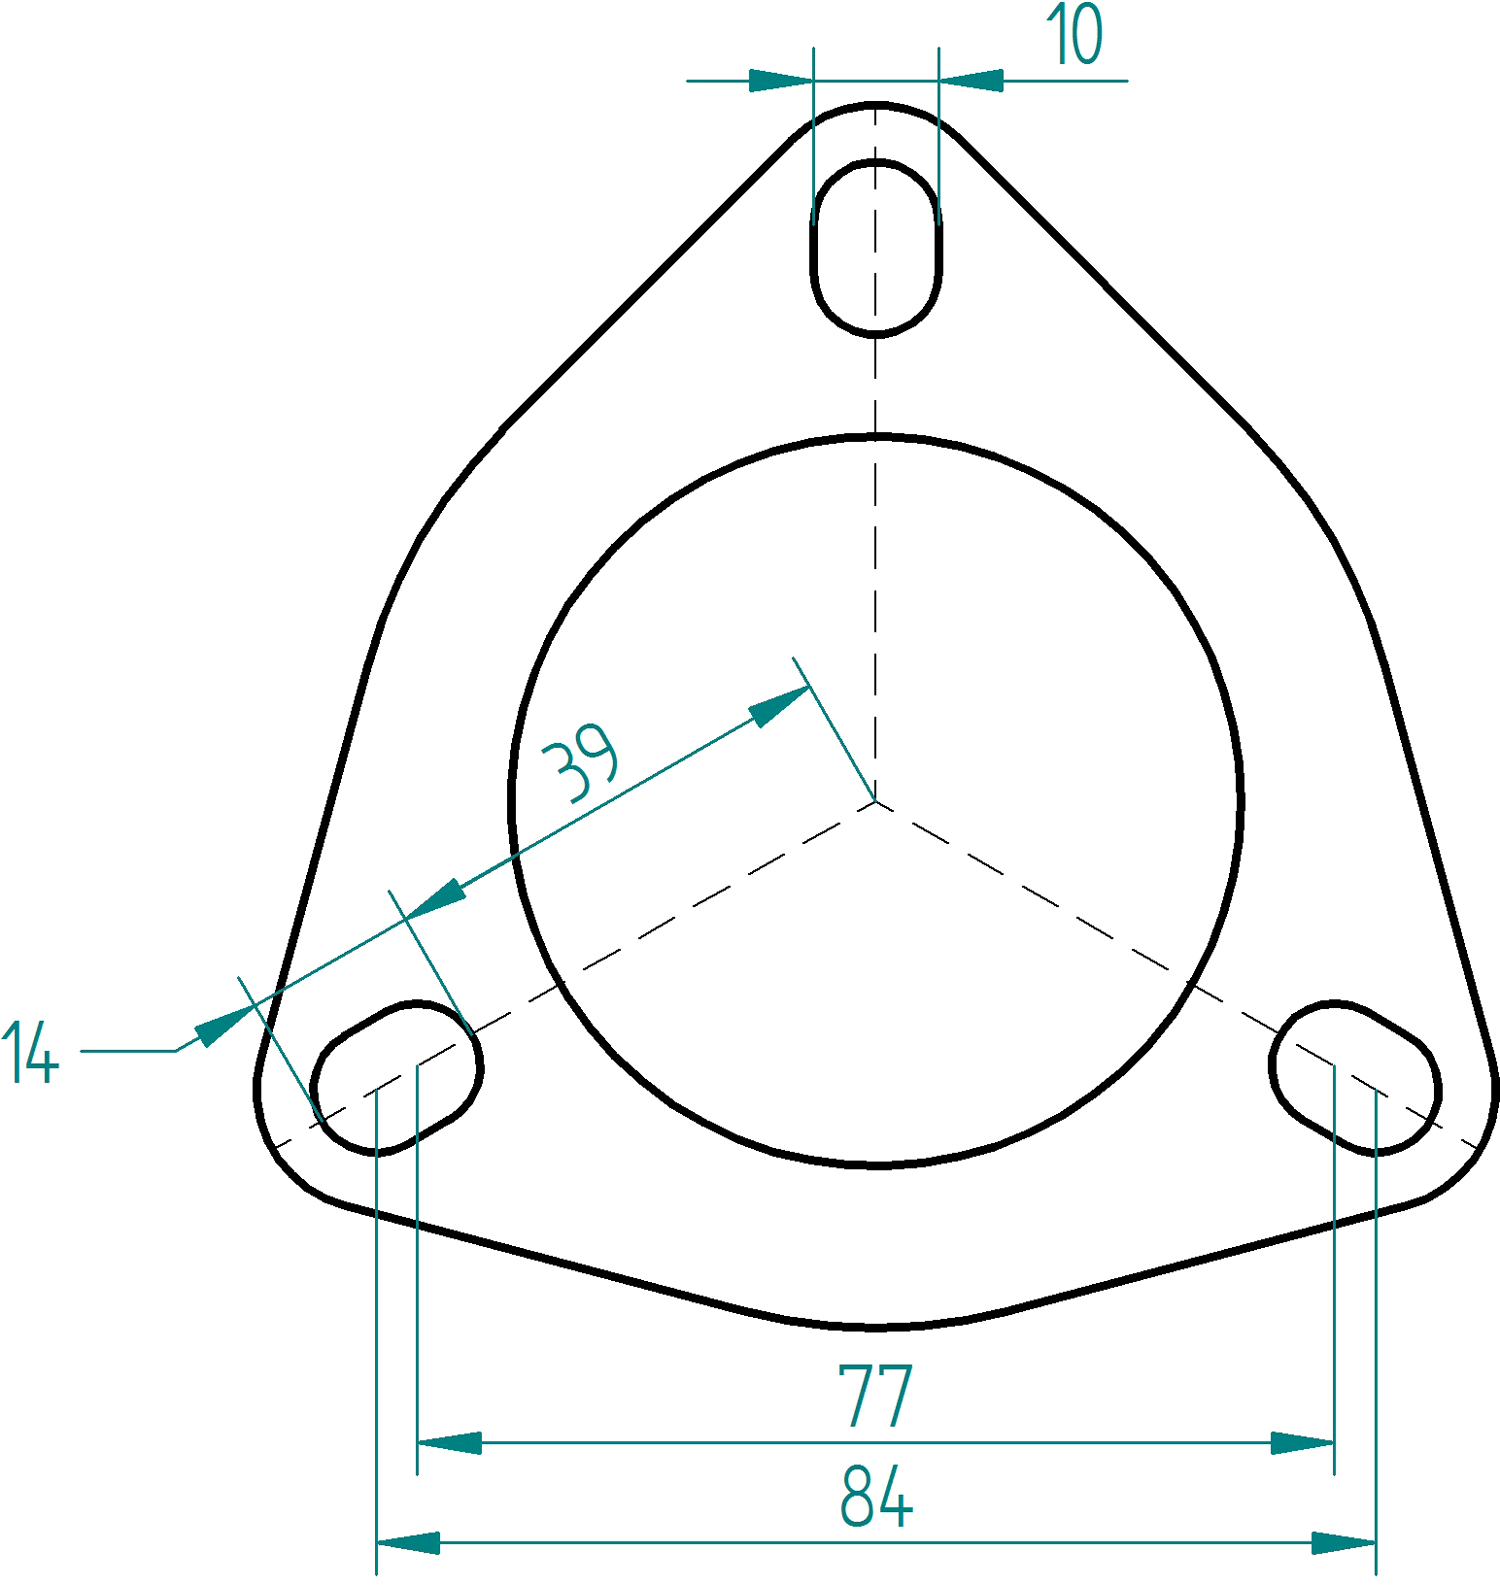 Rohrausschnitt Powersprint Dreiecks-Flansch 60 mm Durchm 